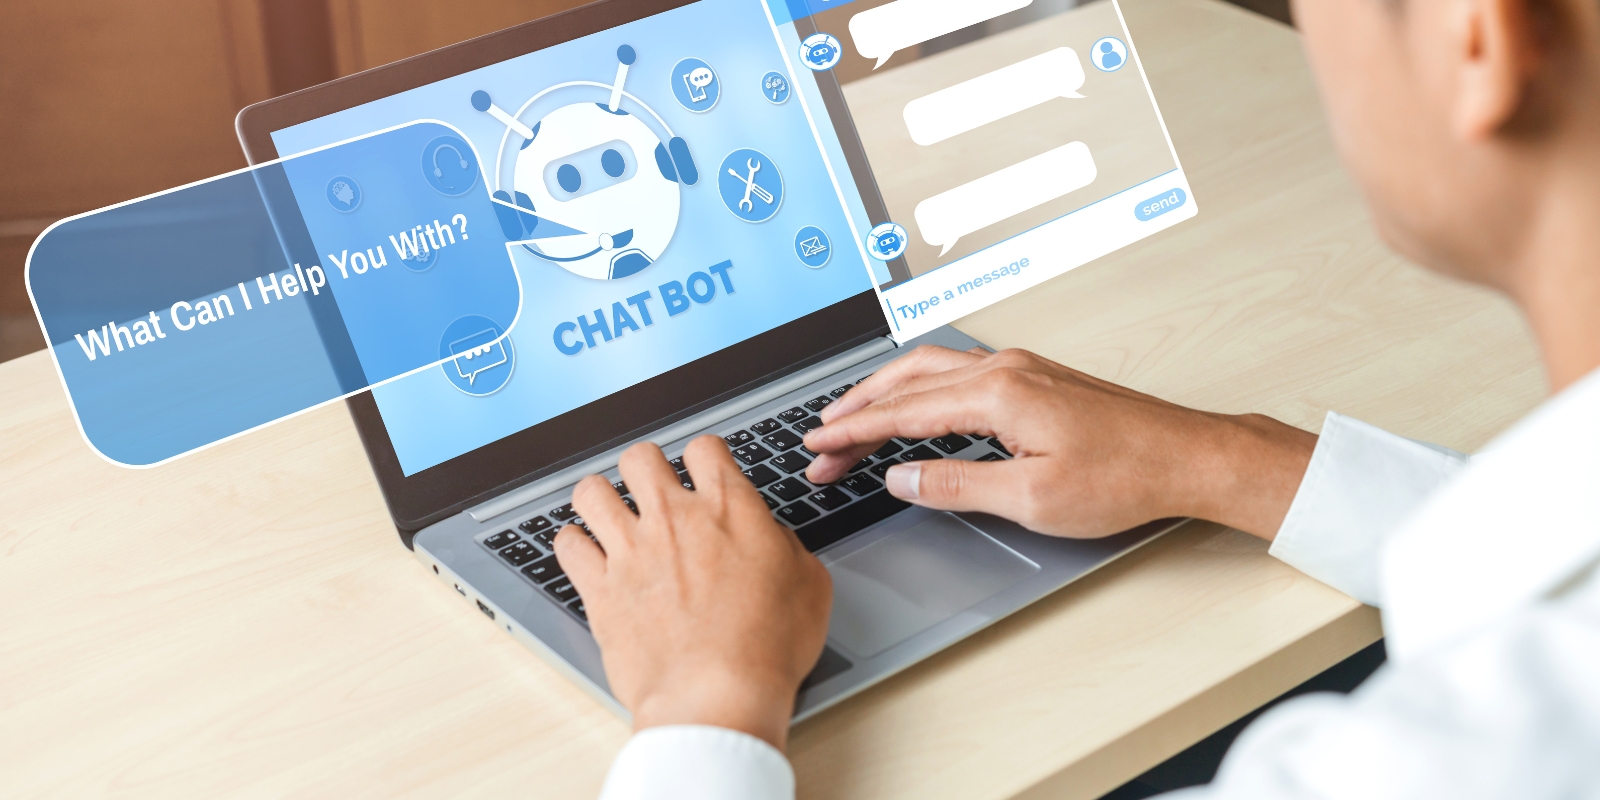 Chatbot op een laptop beantwoord vragen over een evenement